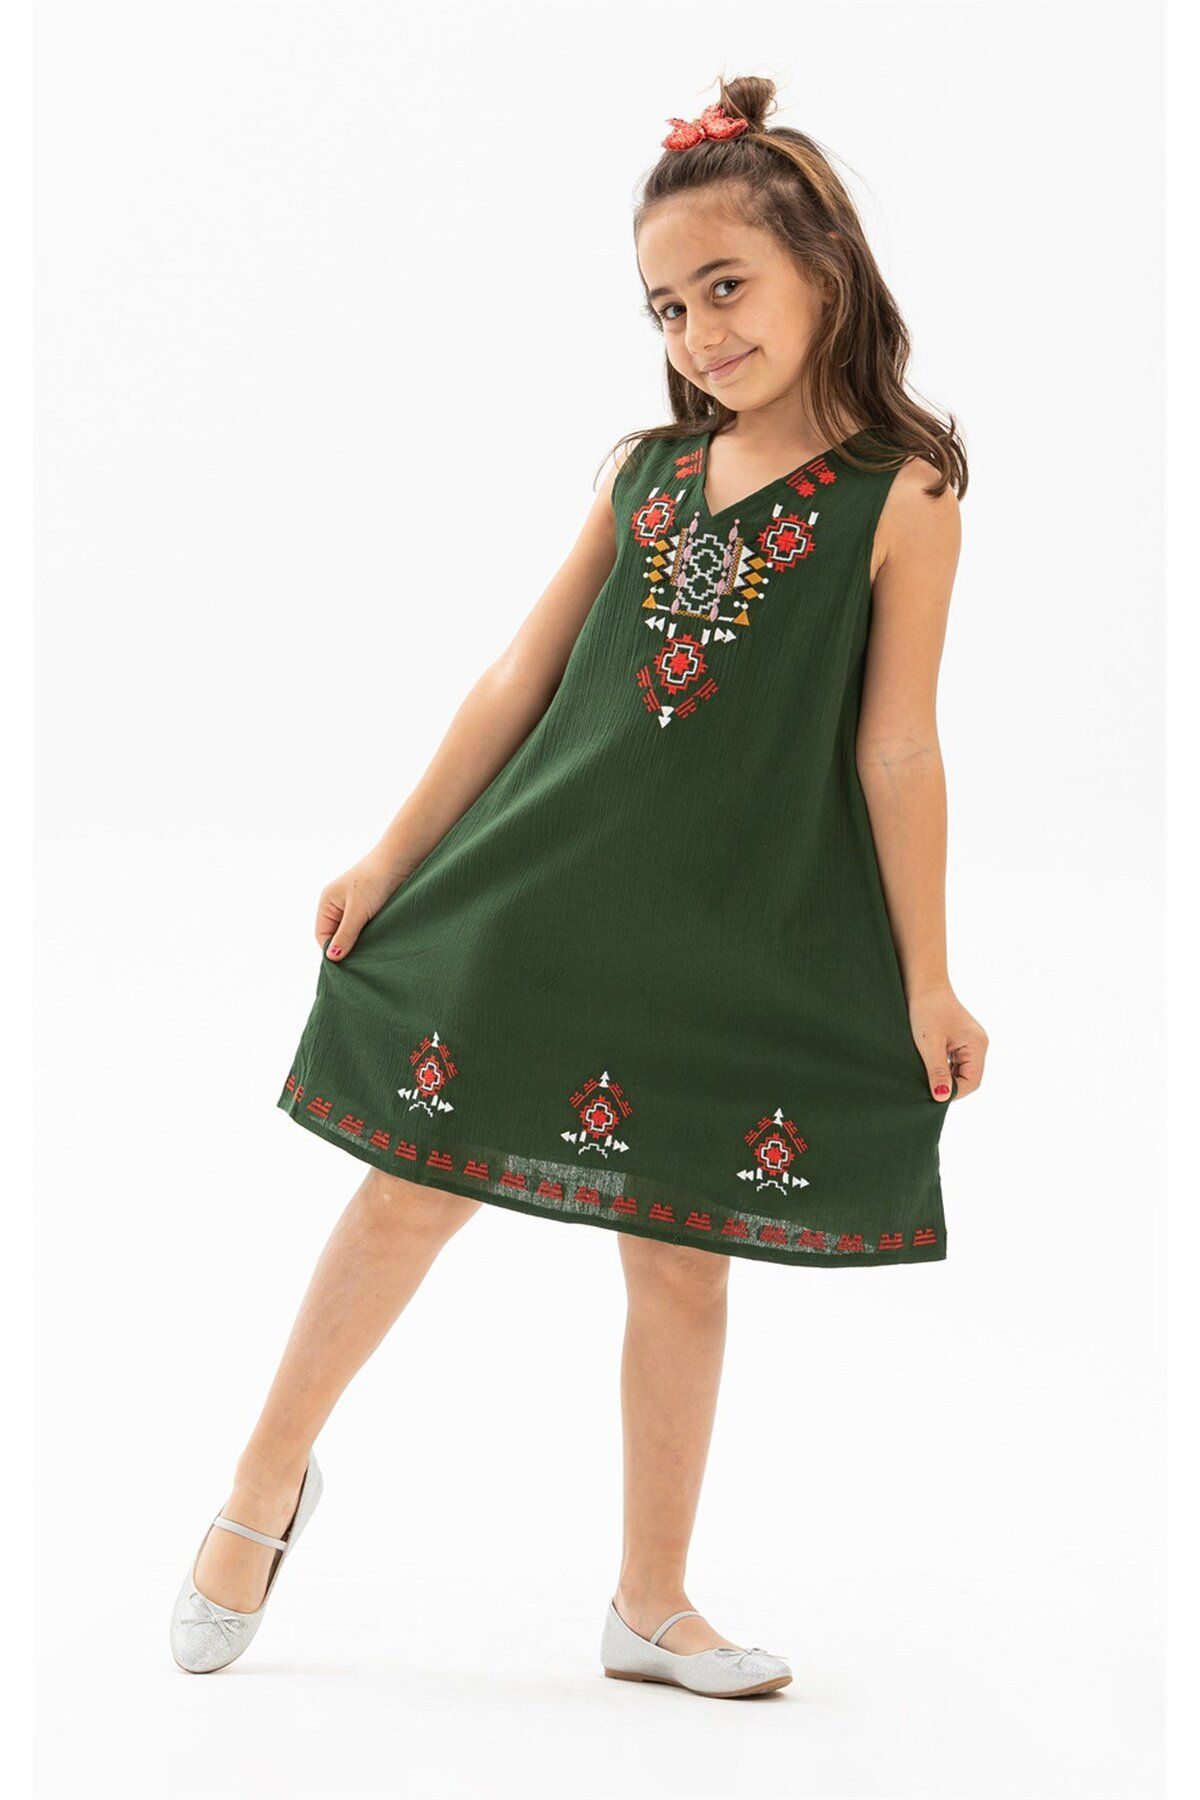 Eliş Şile Bezi Gökçe Şile Bezi Kız Çocuk Yazlık Elbise Yeşil Ysl